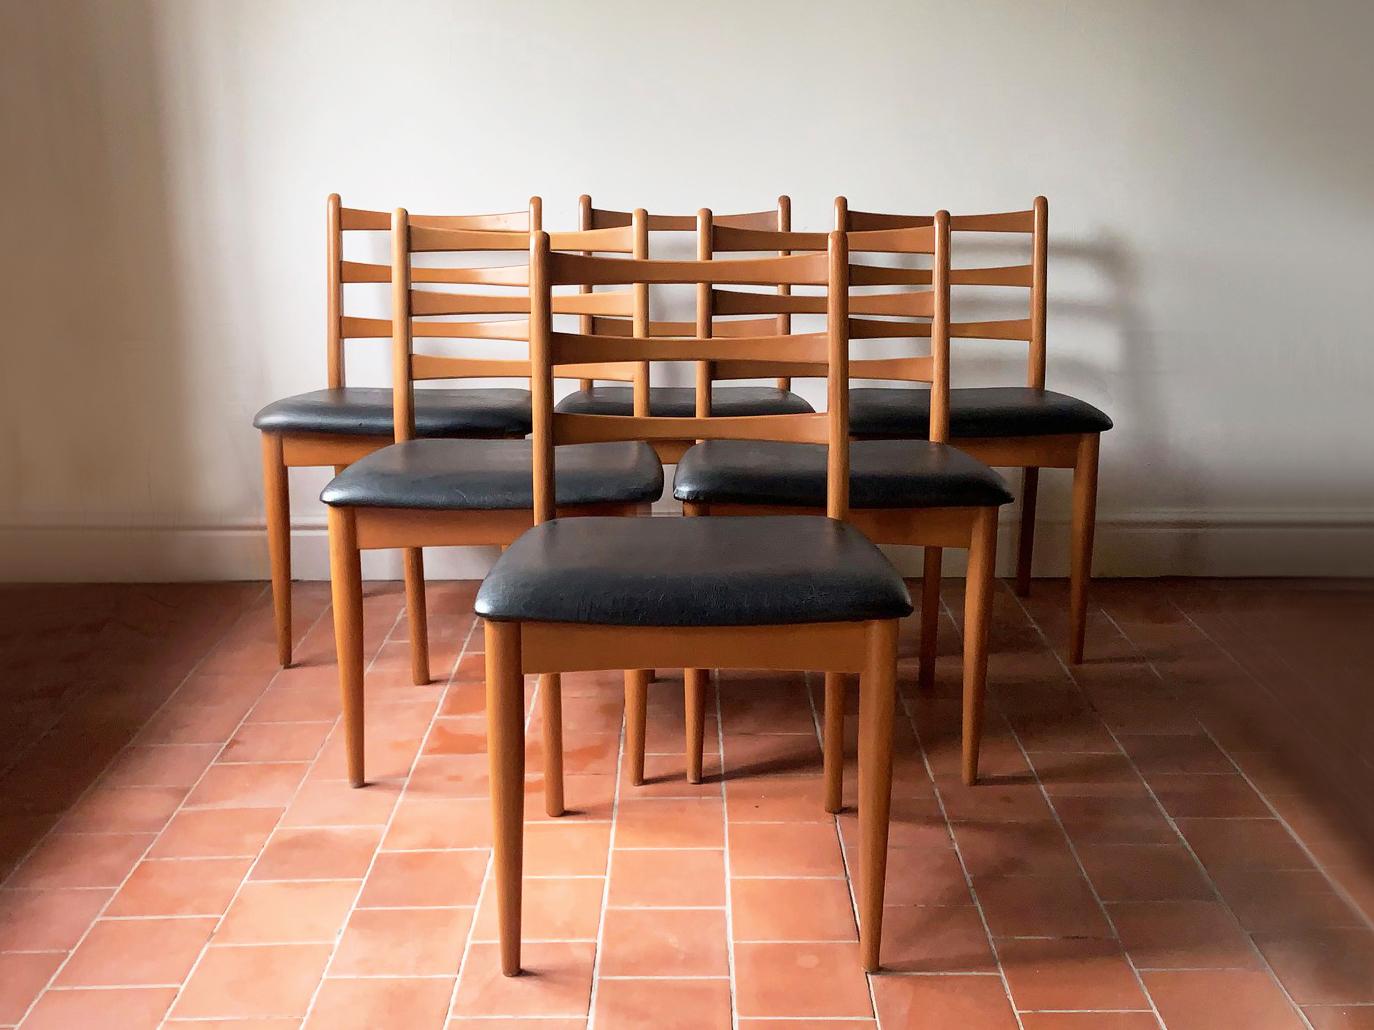 Le prix indiqué est pour les SIX chaises
(Possibilité de vendre 4 chaises, prix sur demande)

Fondé en 1957 par Chaim Schreiber, le mobilier Schreiber est une intéressante success story britannique.  La société était l'un des plus grands noms de